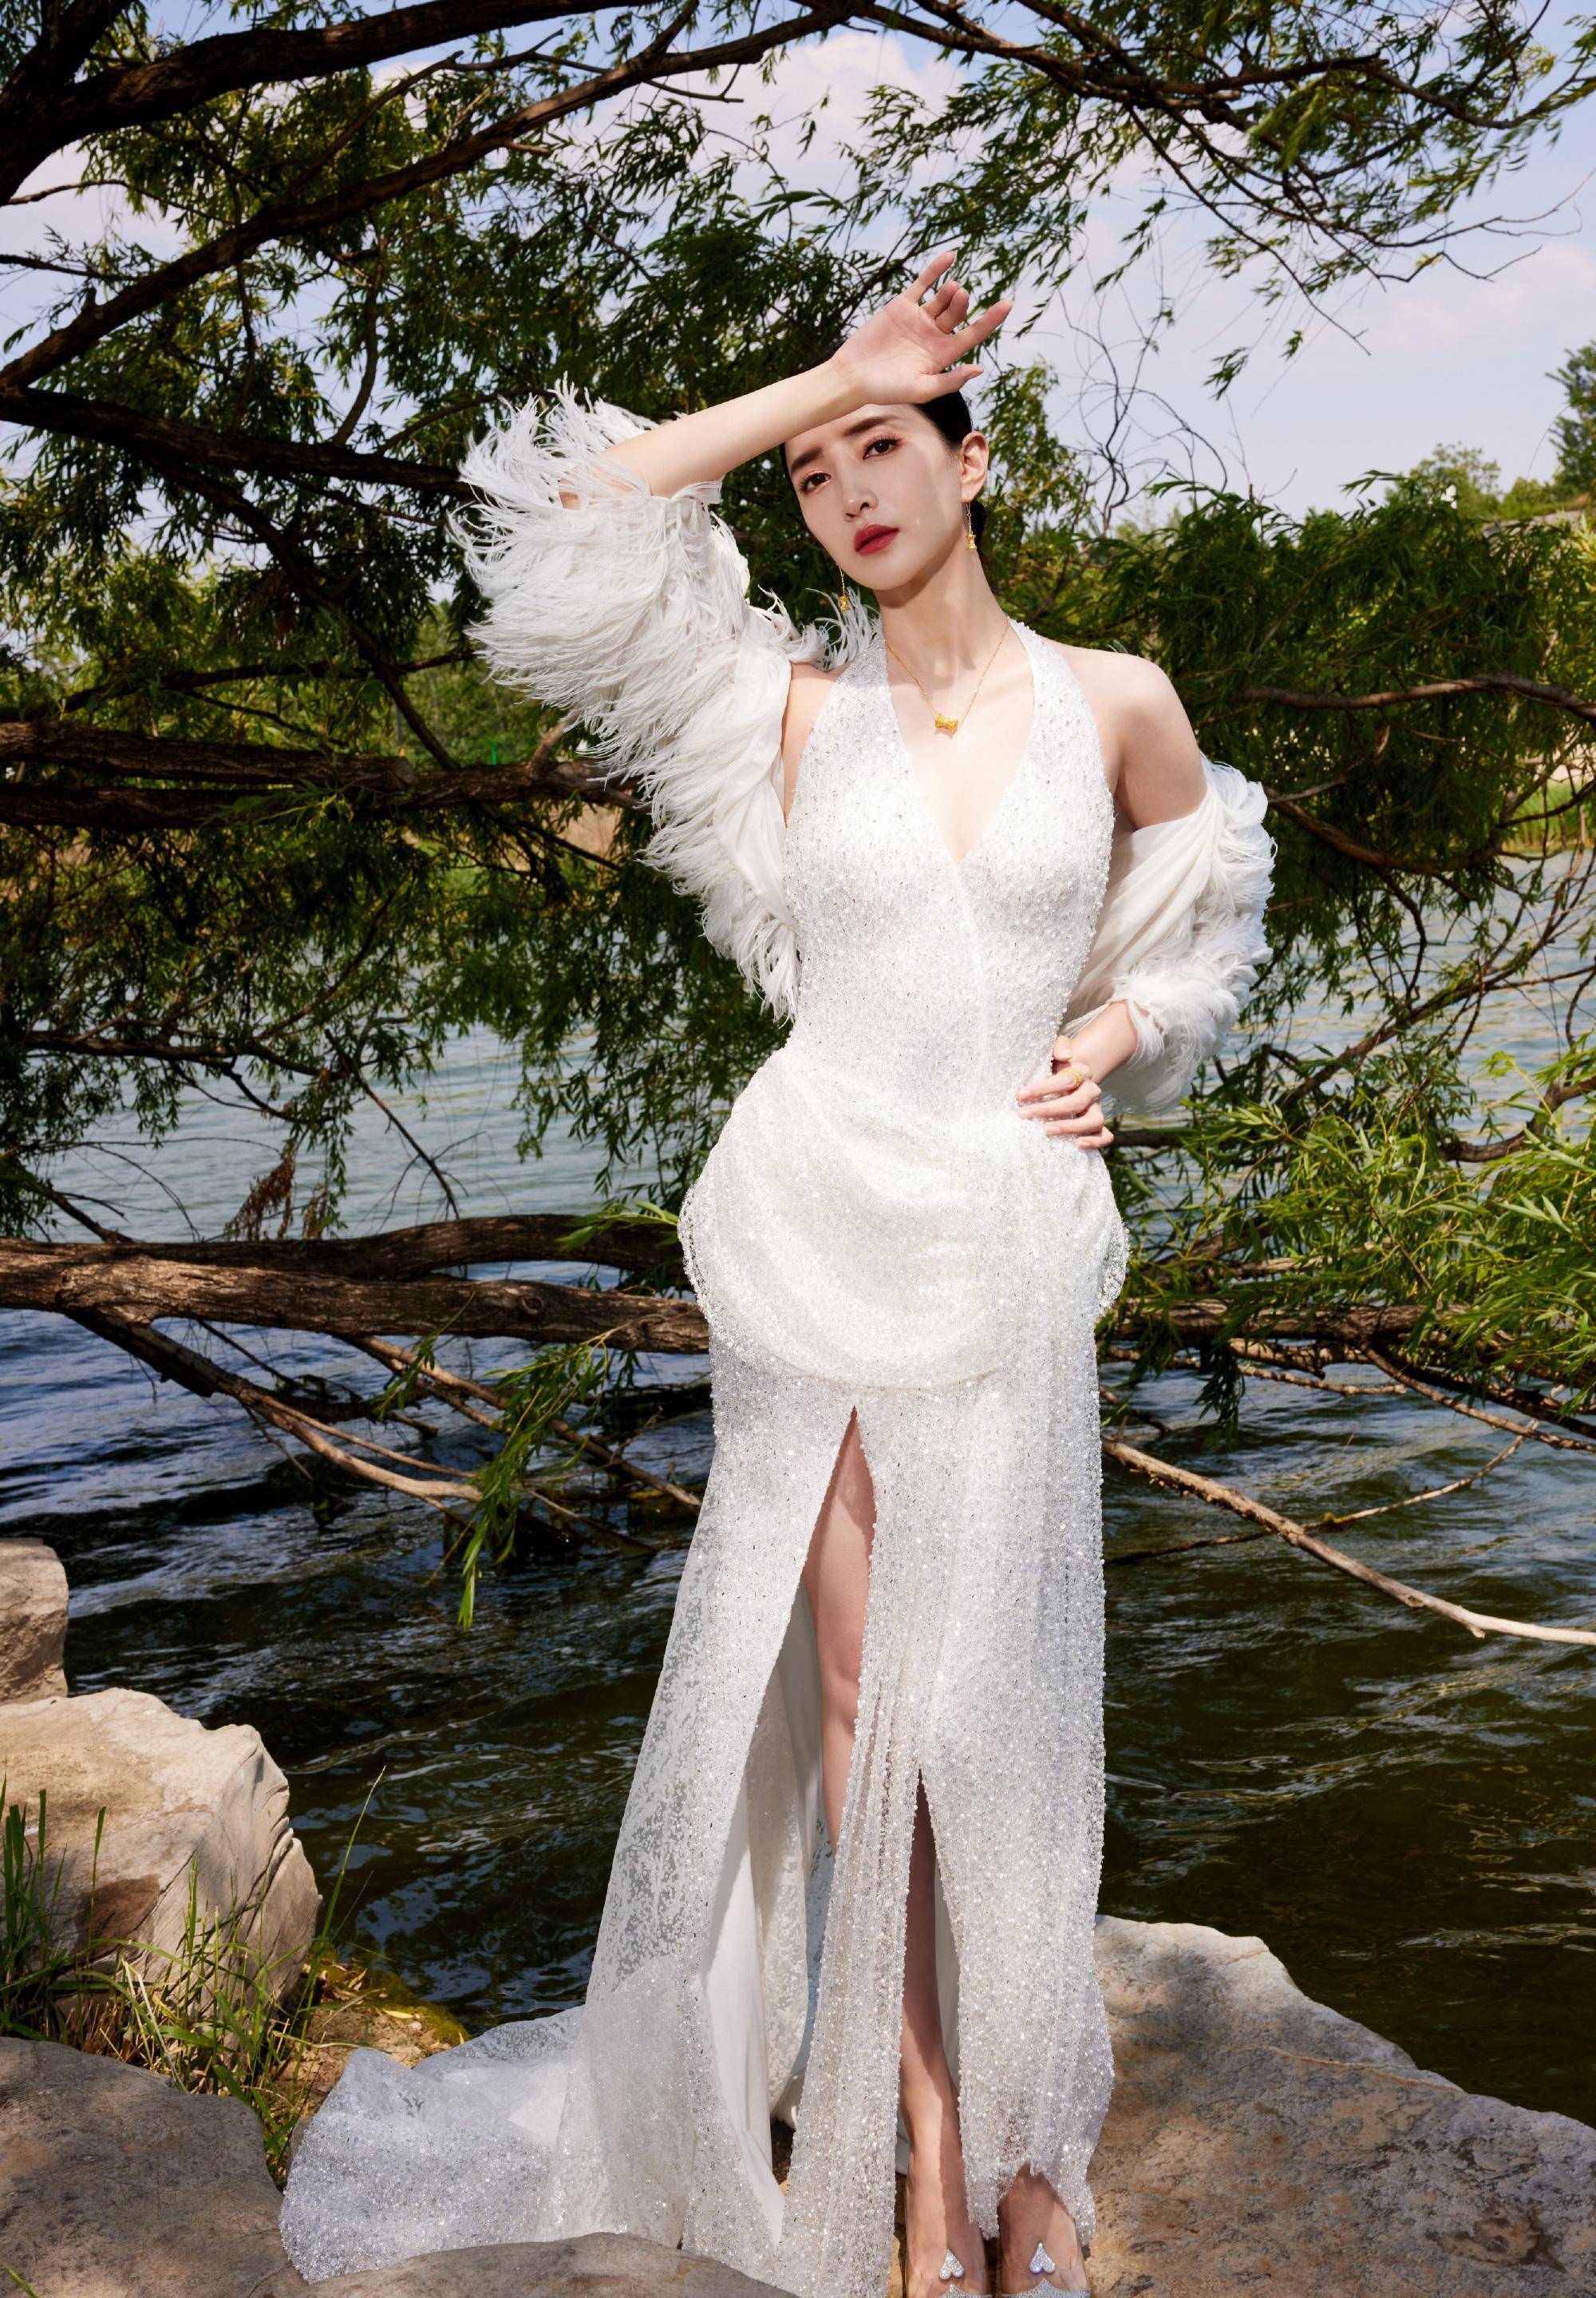 江疏影最新一套活动美照今日曝光,深v露背高级时尚白裙造型,明快优雅